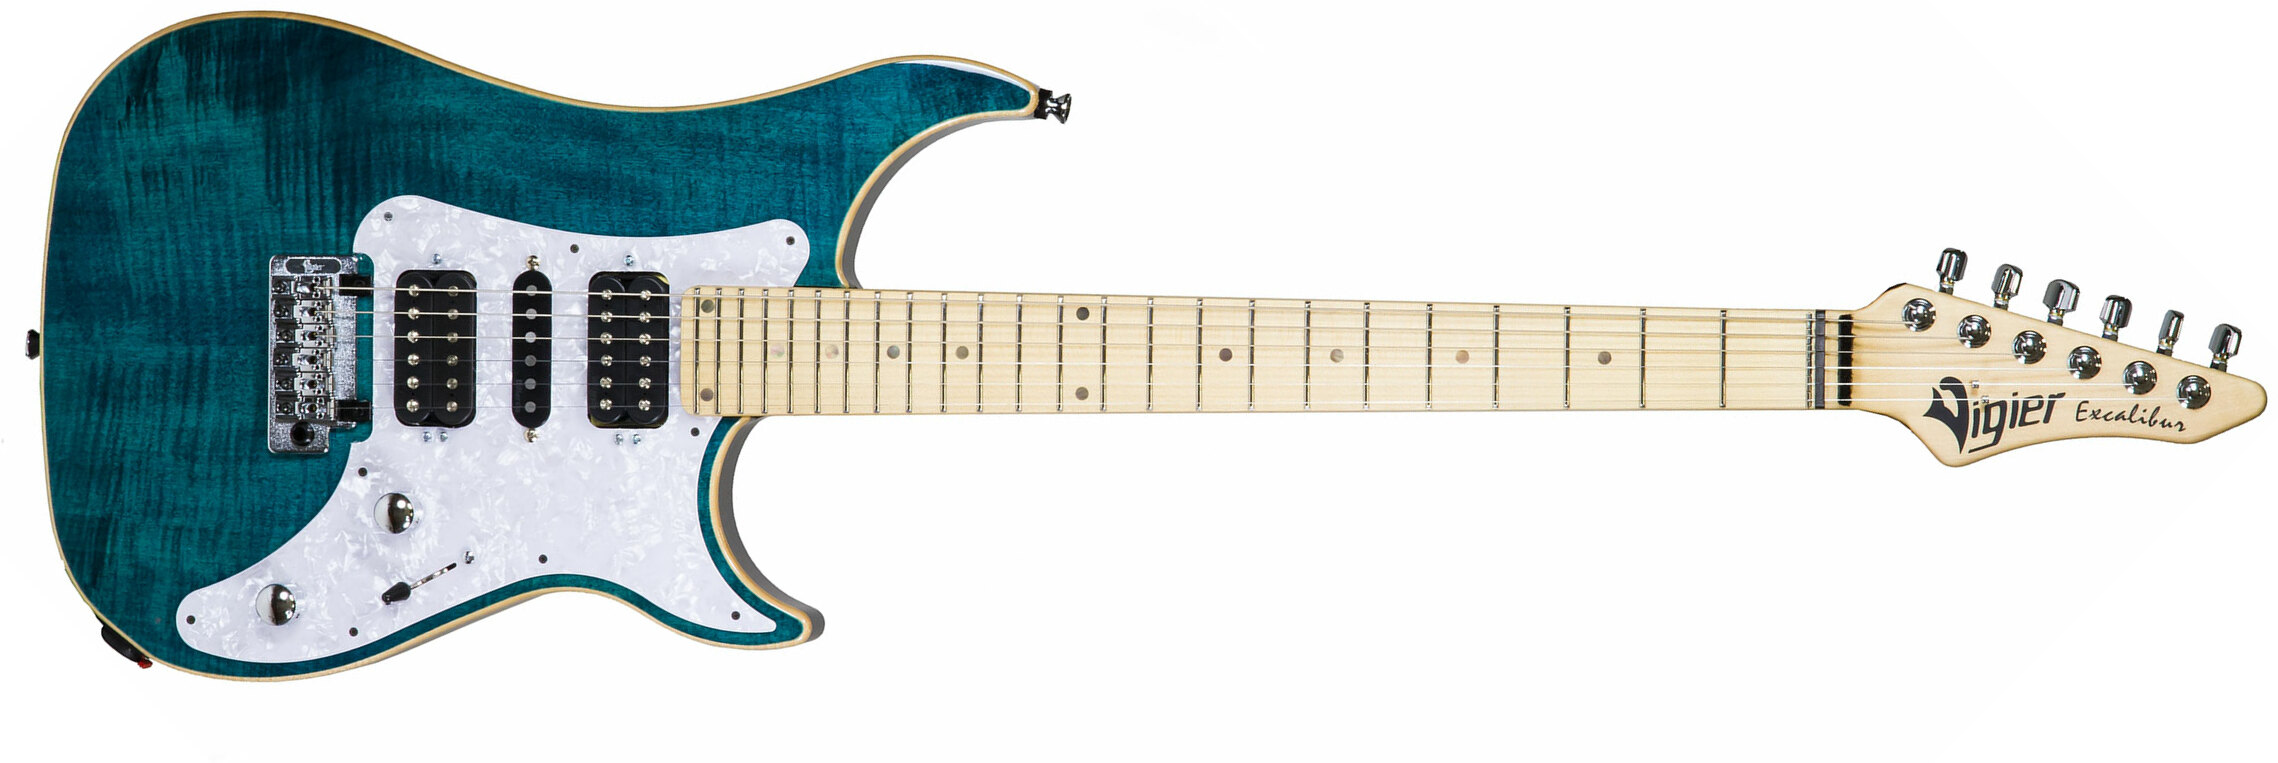 Vigier Excalibur Special Hsh Trem Mn +housse - Deep Blue - Double cut electric guitar - Main picture